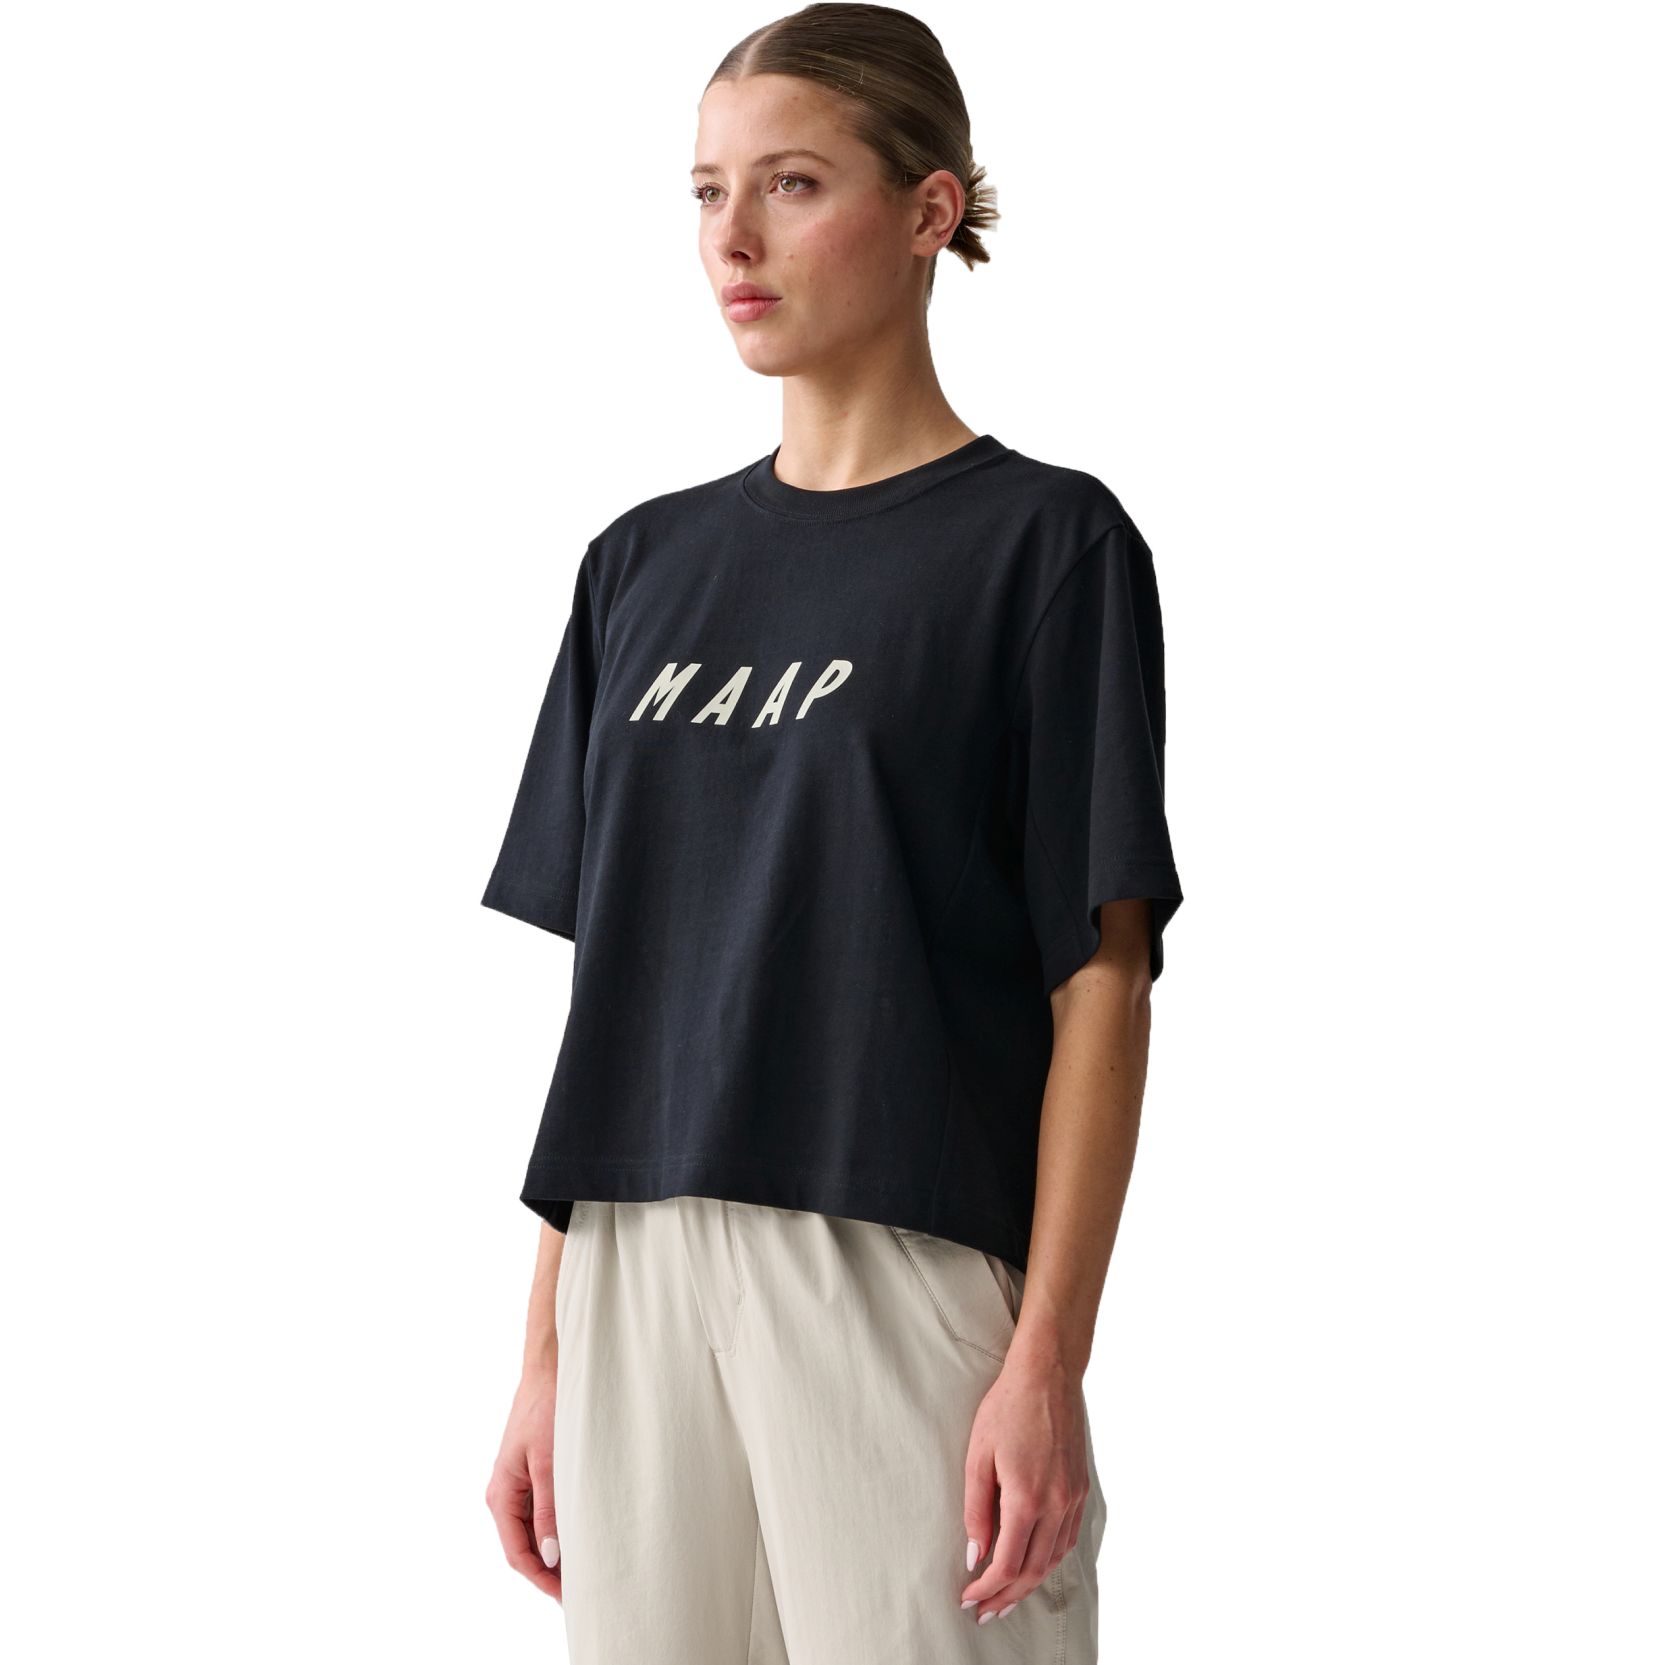 Productfoto van MAAP LPW Replica T-Shirt Dames - zwart